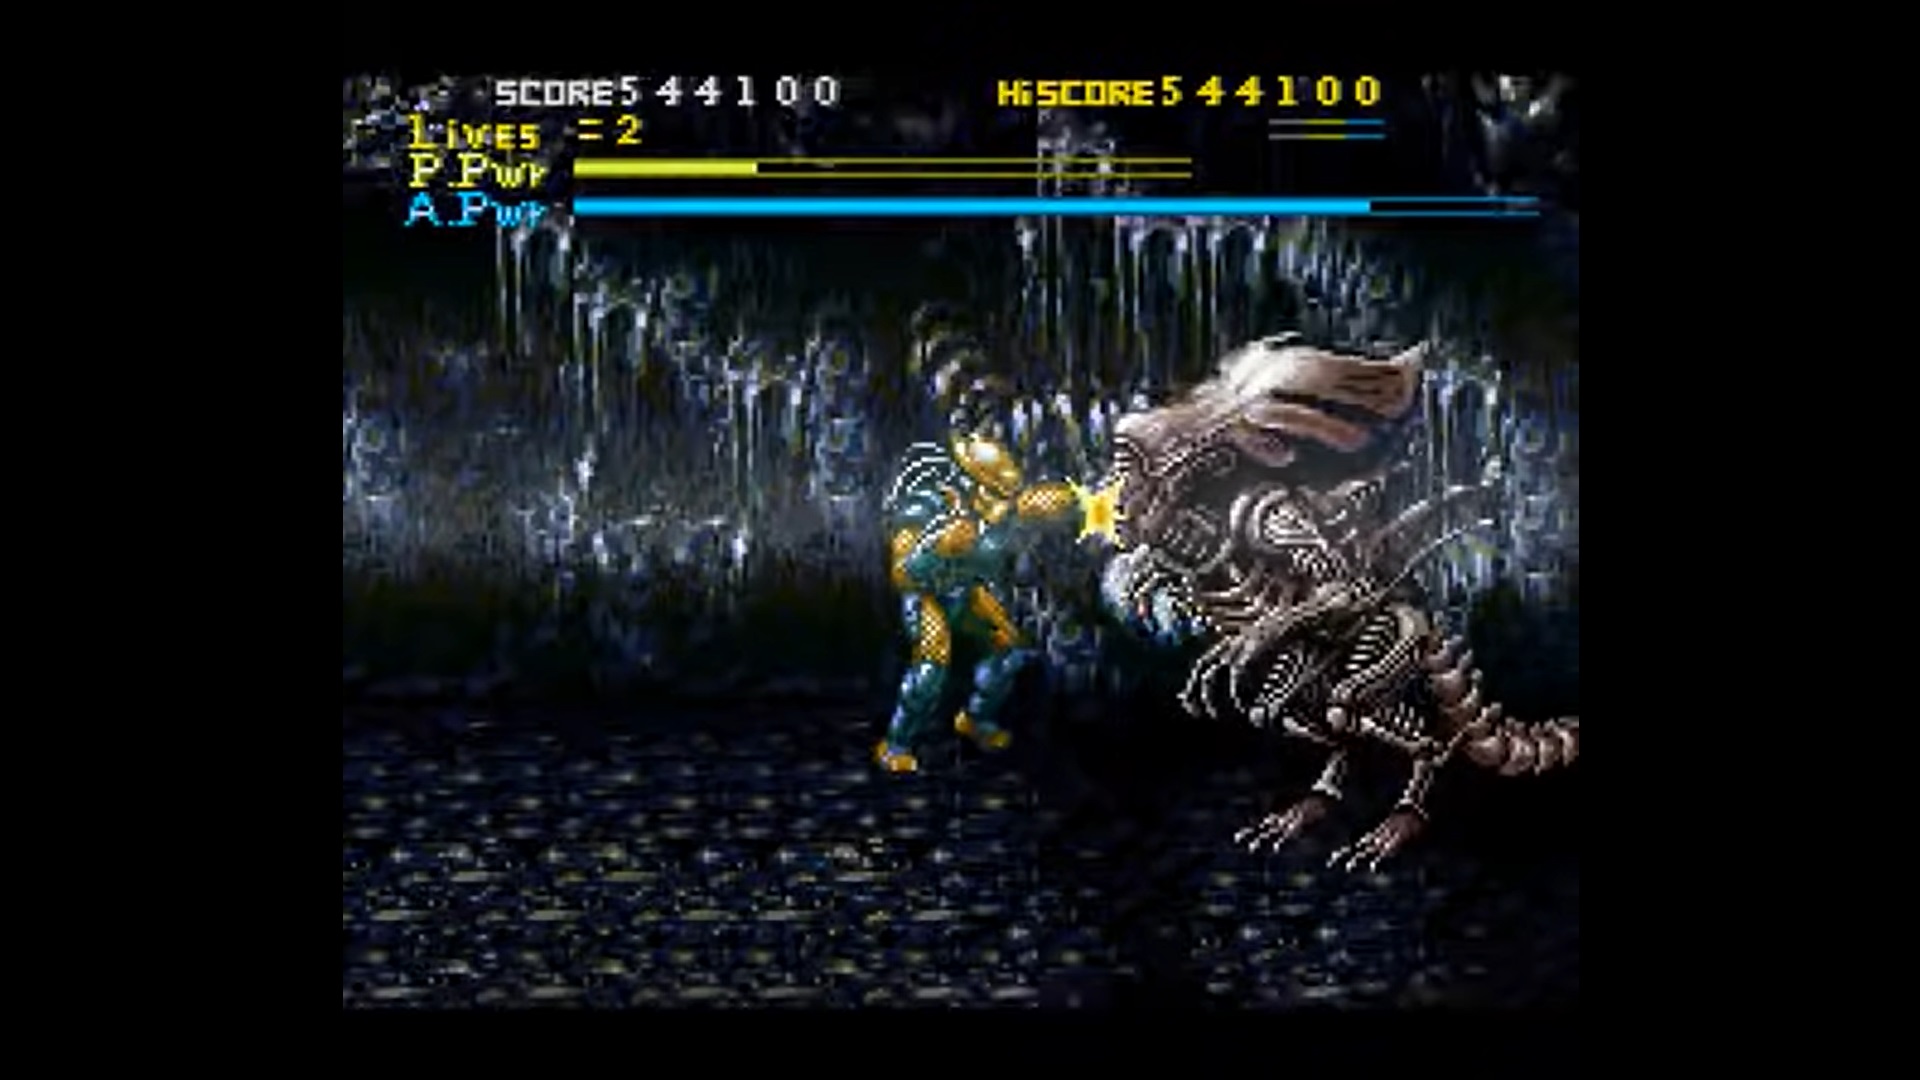 alien vs predator 1 game